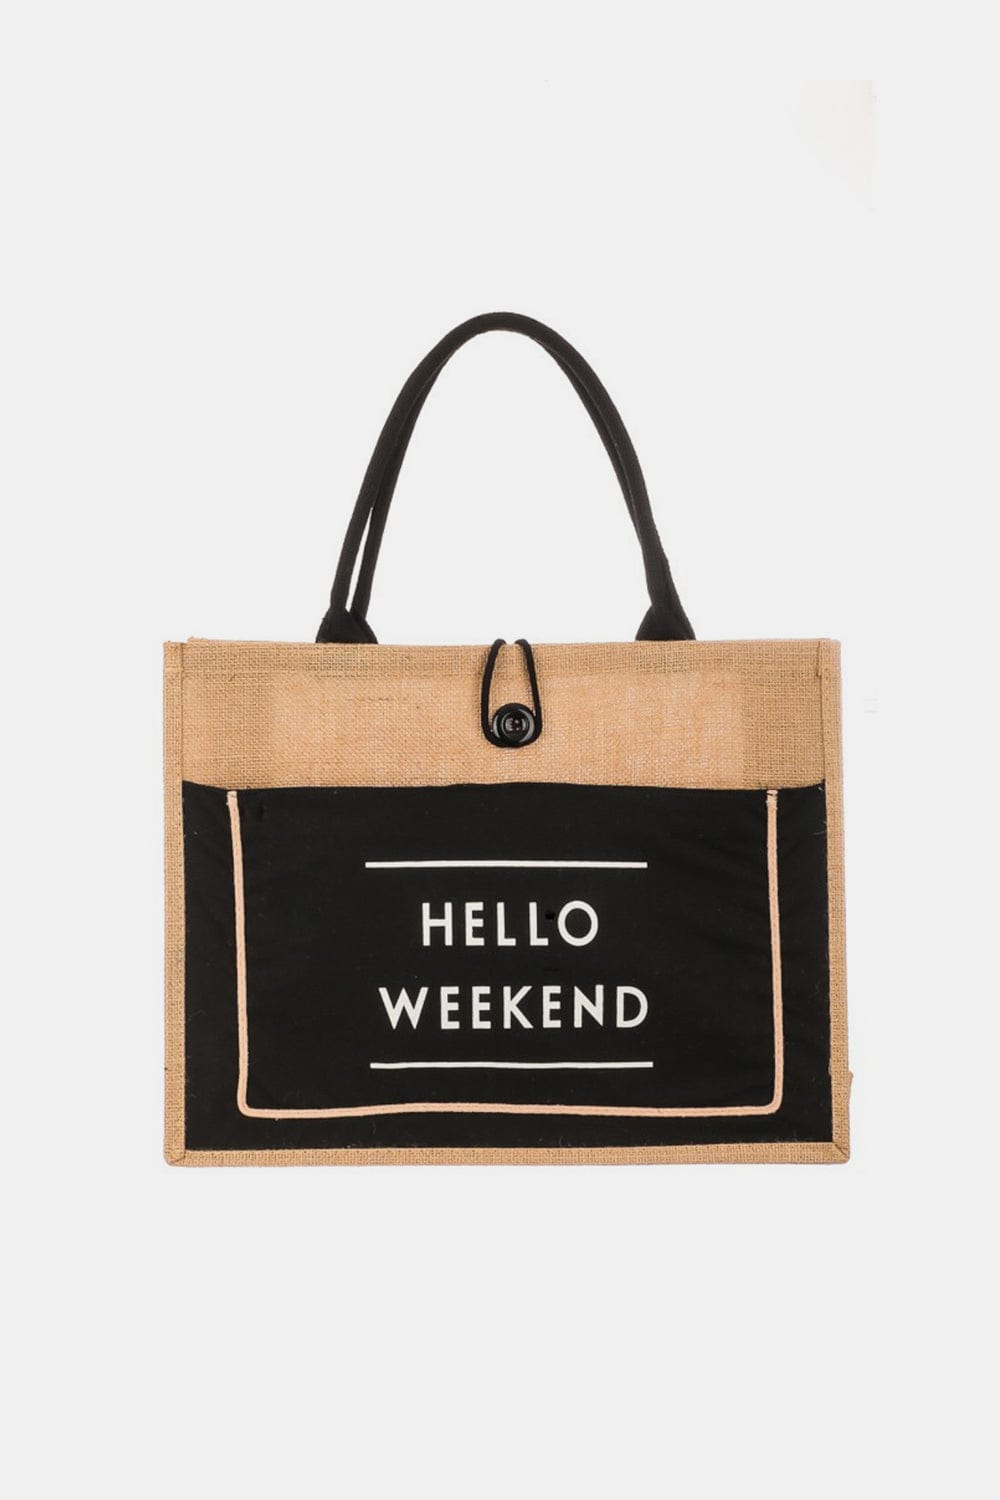 The802Gypsy Handbags, Wallets & Cases ❤️GYPSY-Fame-Hello Weekend Burlap Tote Bag